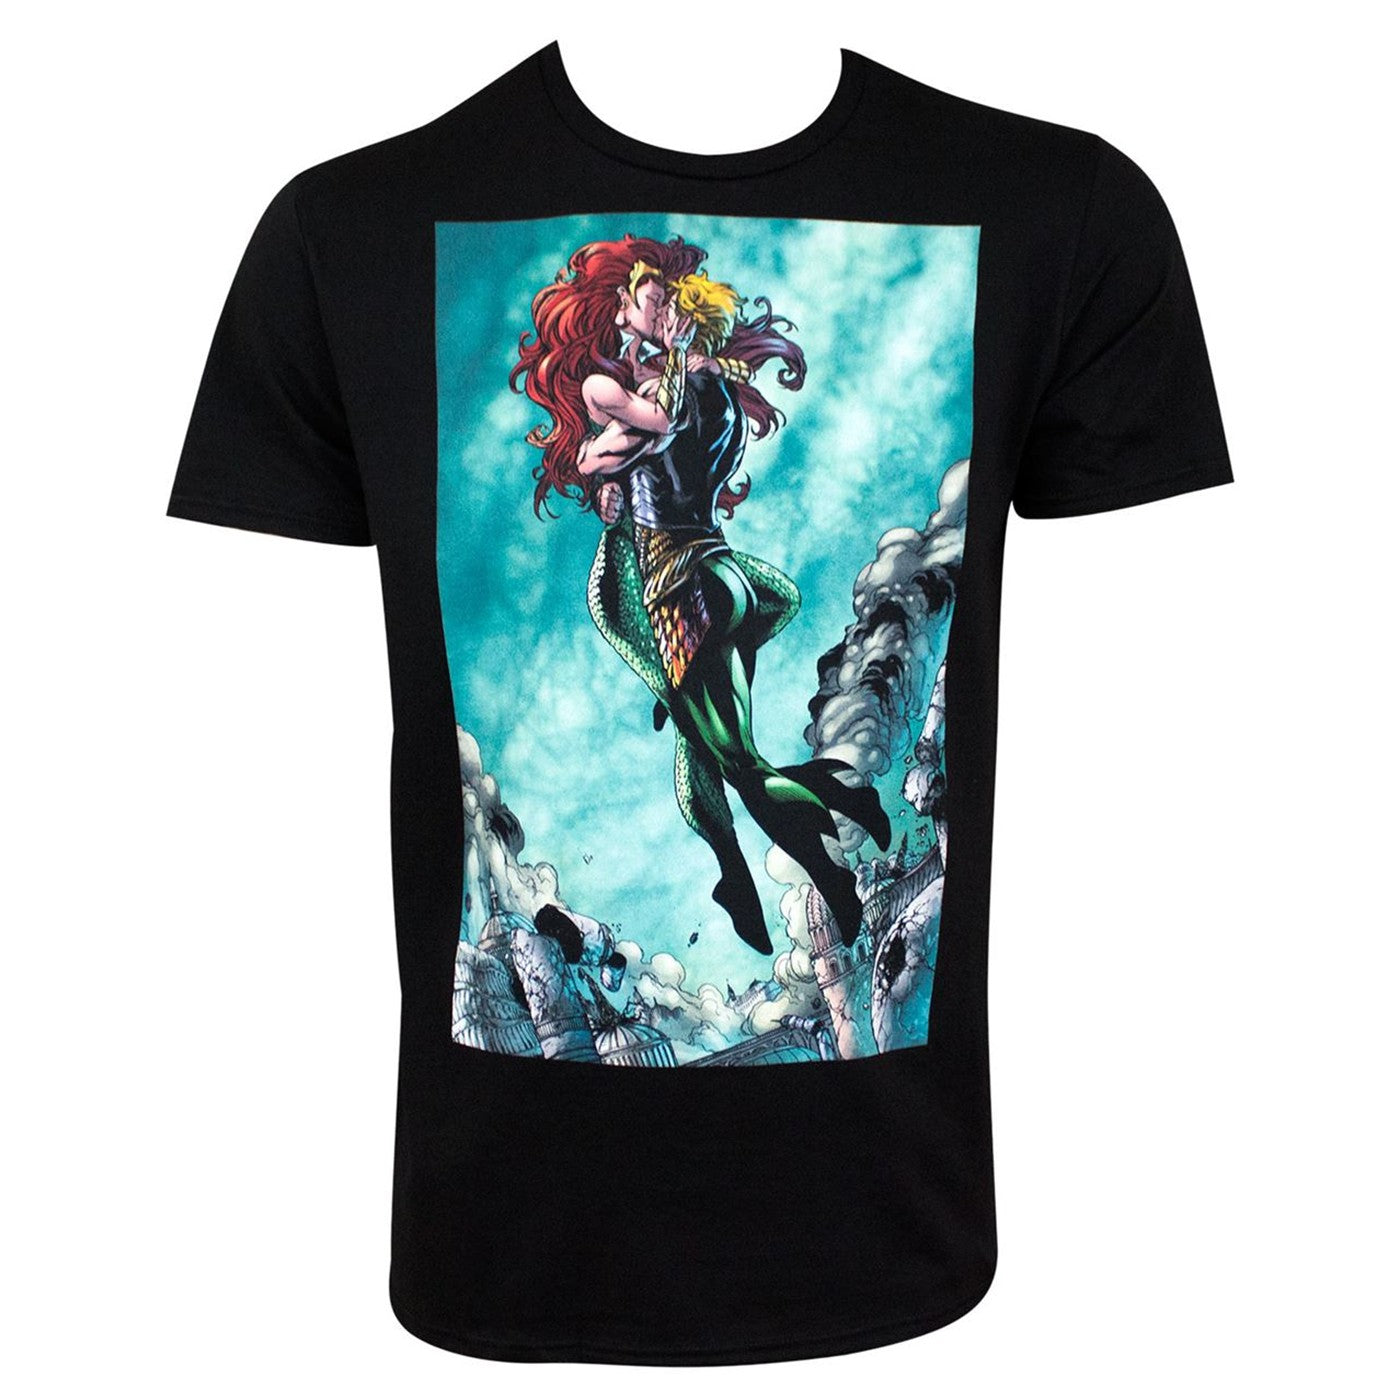 title:Aquaman and Mera Kissing Black Men's T-Shirt;color:Black